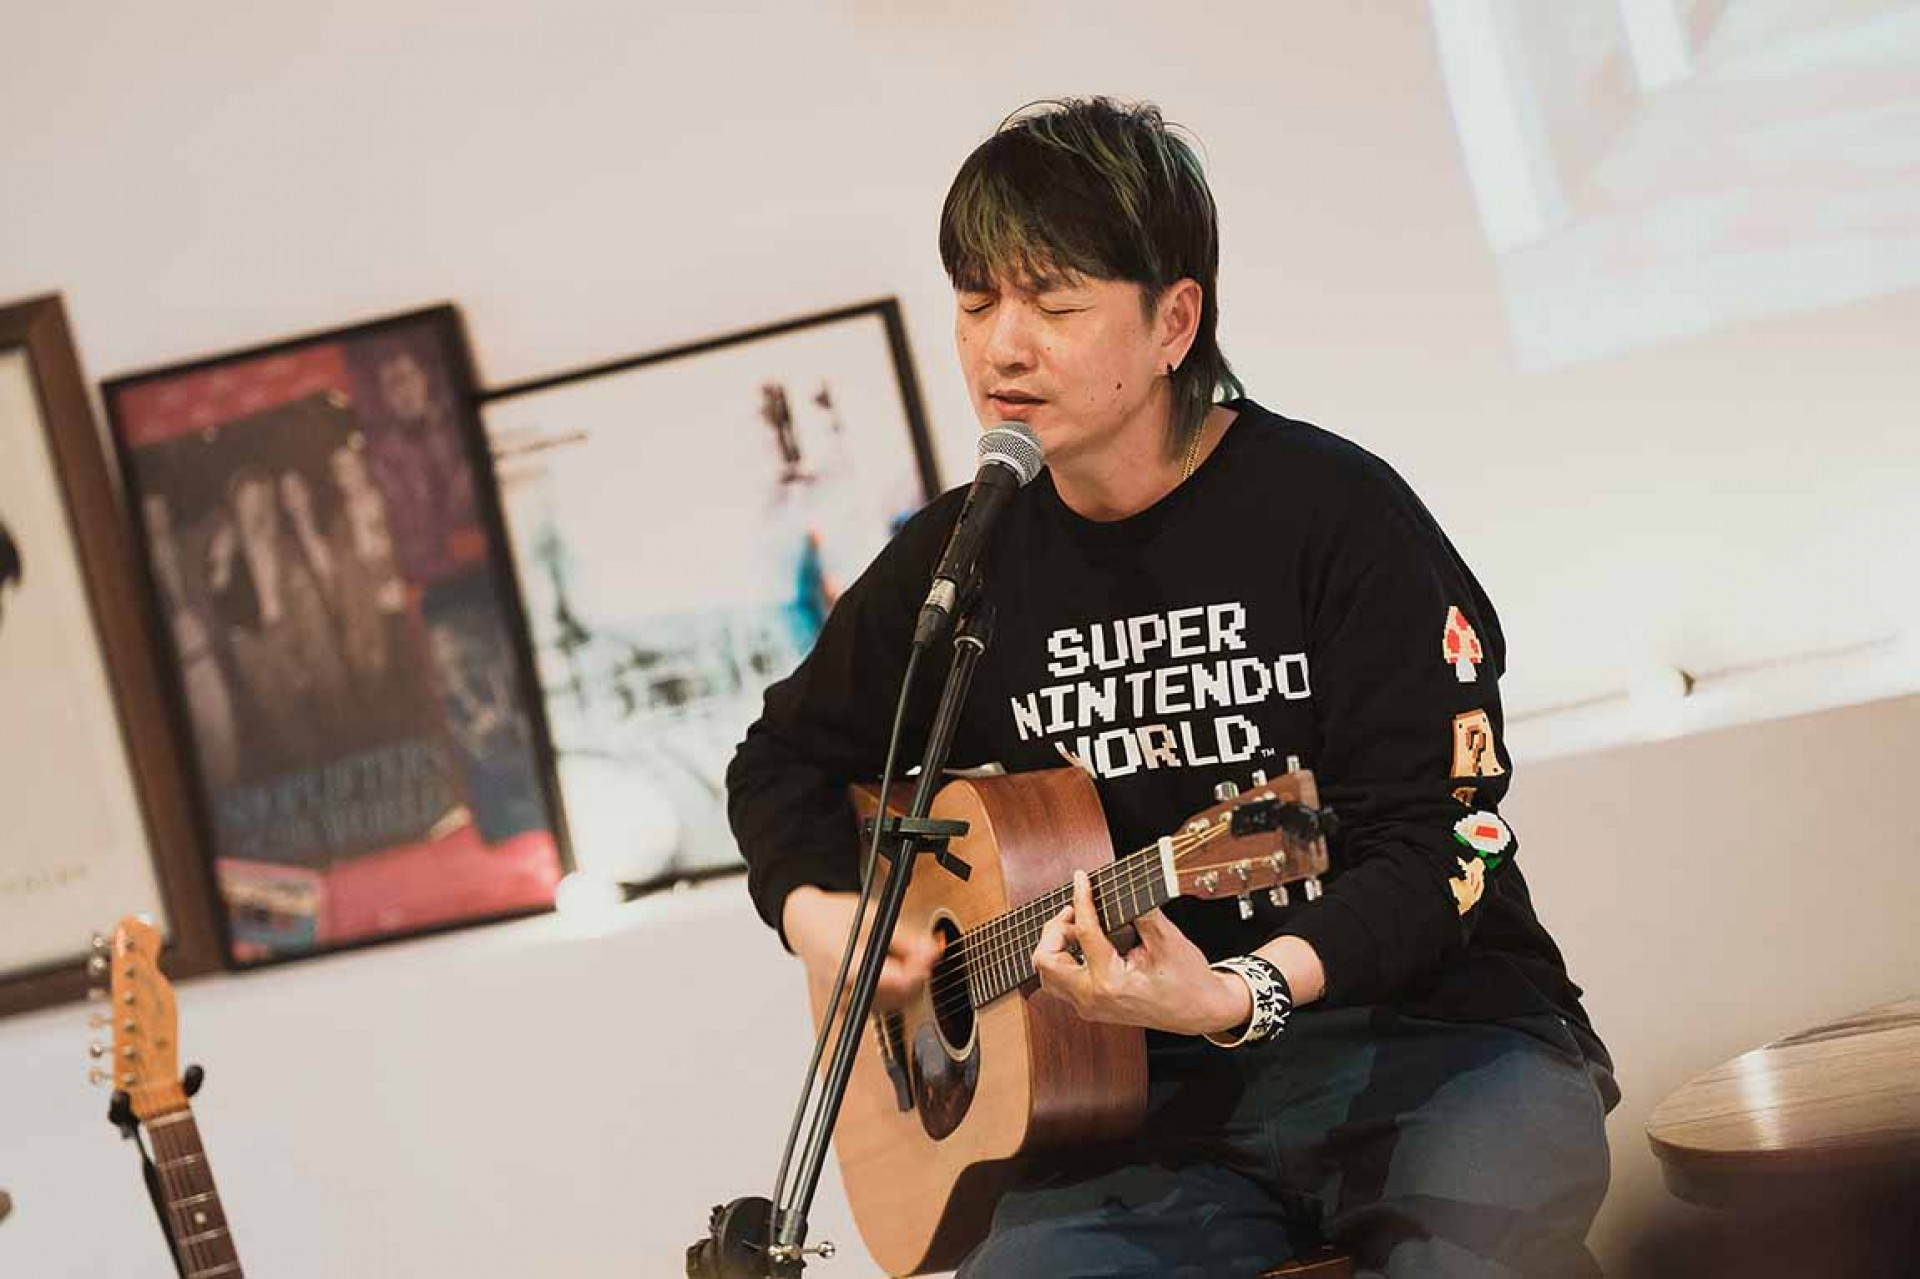 滅火器吉他手宇辰分享與日本朋友之動人故事